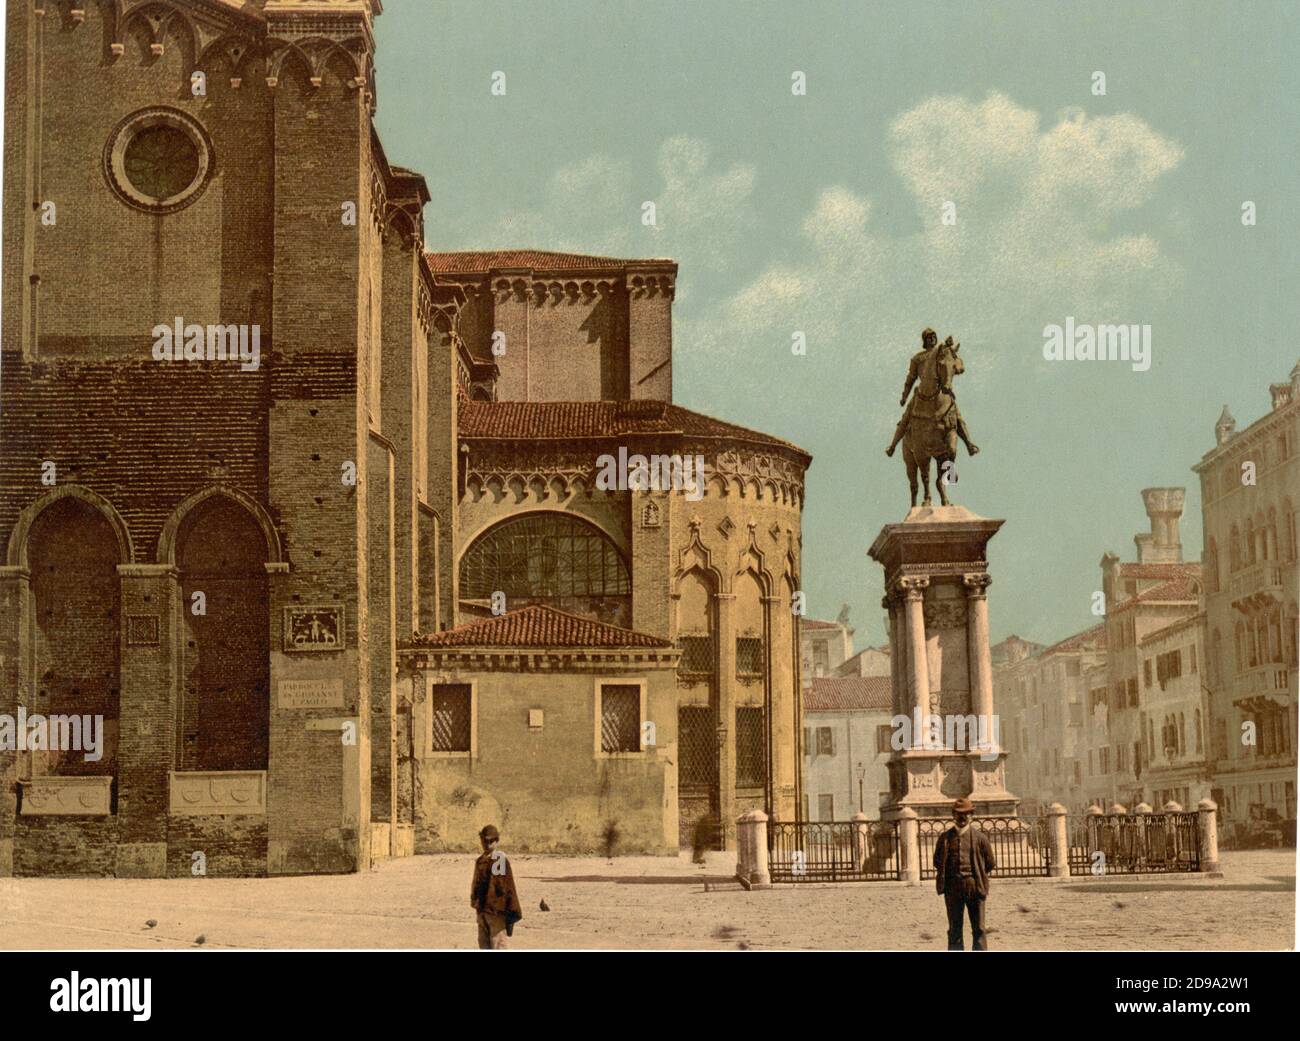 1895 ca. , VENEZIA ,  ITALY : Santi Giovanni e Paolo church and statue of Bartolomeo Colleoni by Verrocchio  . Photocrom print colors edited by Detroit Publishing Co.  -  VENICE - VENETO -  ITALIA - FOTO STORICHE - HISTORY - GEOGRAFIA - GEOGRAPHY  - ARCHITETTURA - ARCHITECTURE  -    -  ARTS - ARTE  - statua equestre - statue - CHIESA  ----  Archivio GBB Stock Photo